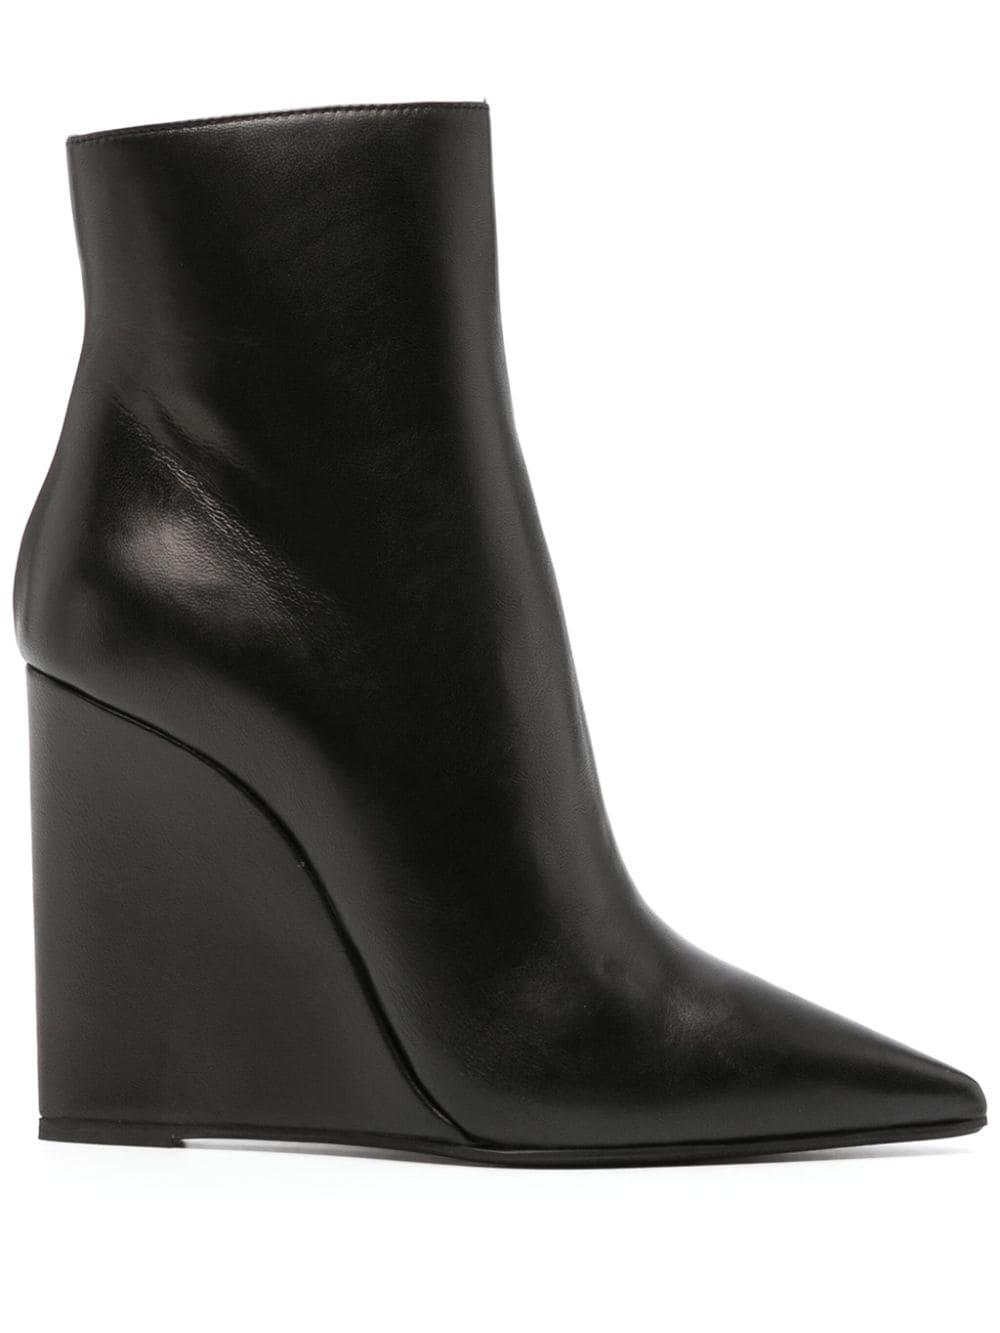 Le Silla Kira 120mm wedge leather boots - Black von Le Silla